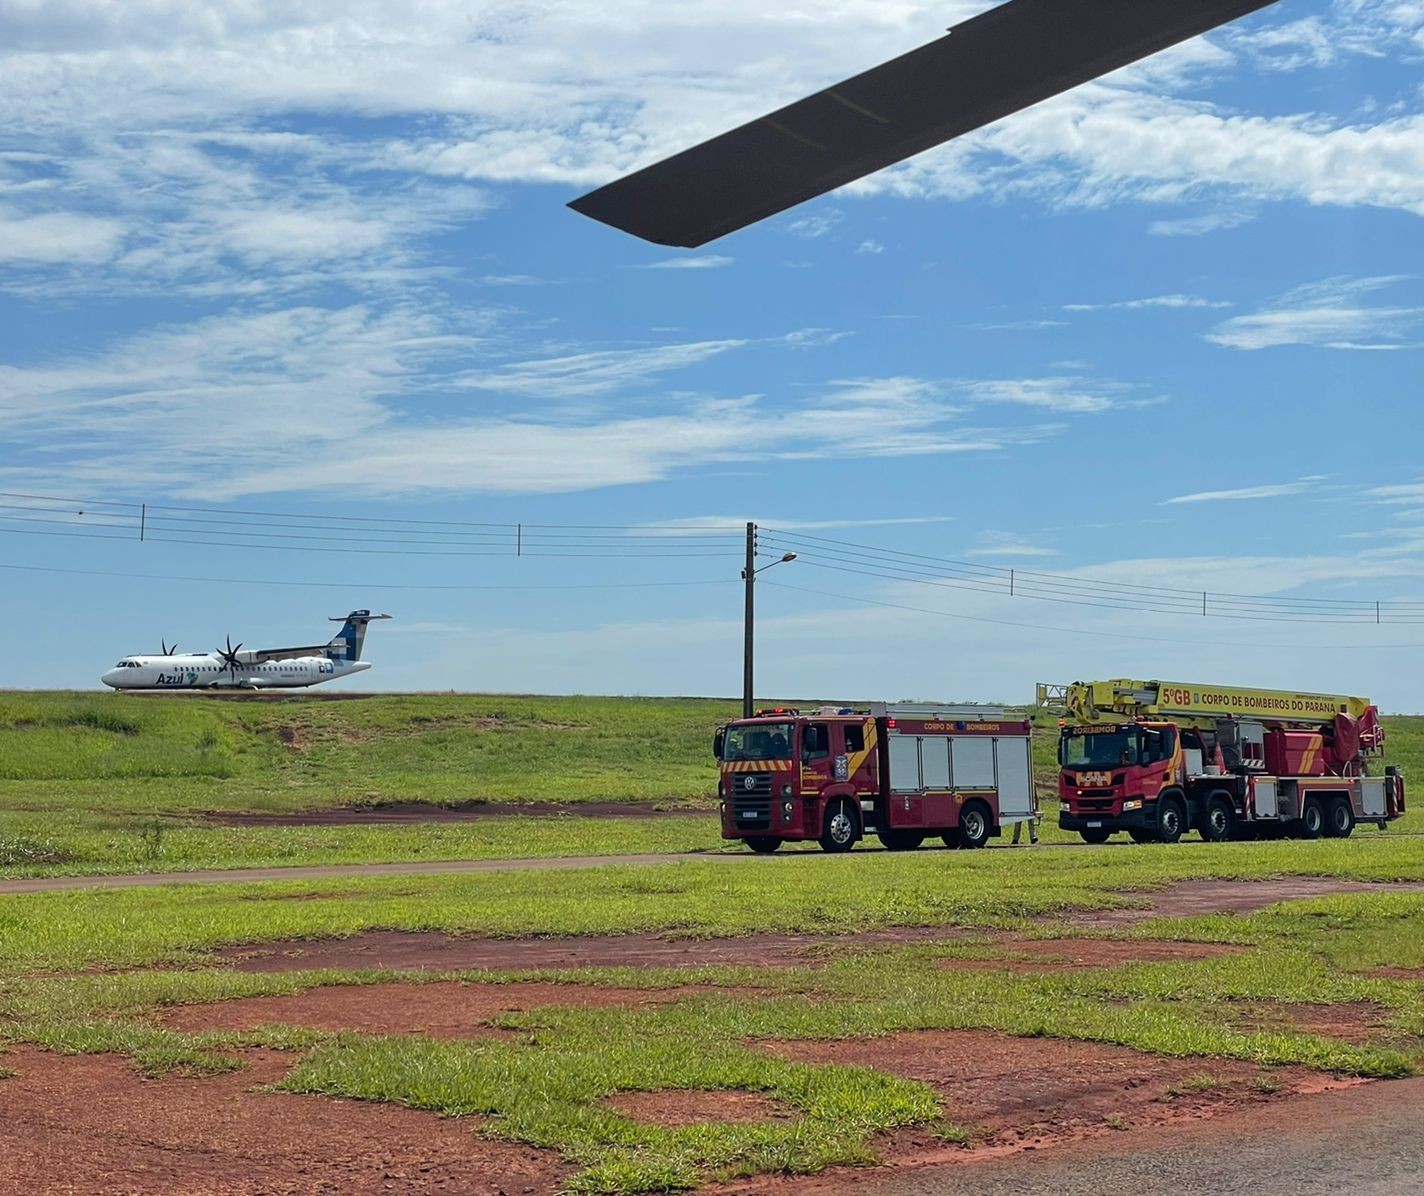 Após apresentar problemas técnicos, avião pousa em segurança no Aeroporto de Maringá